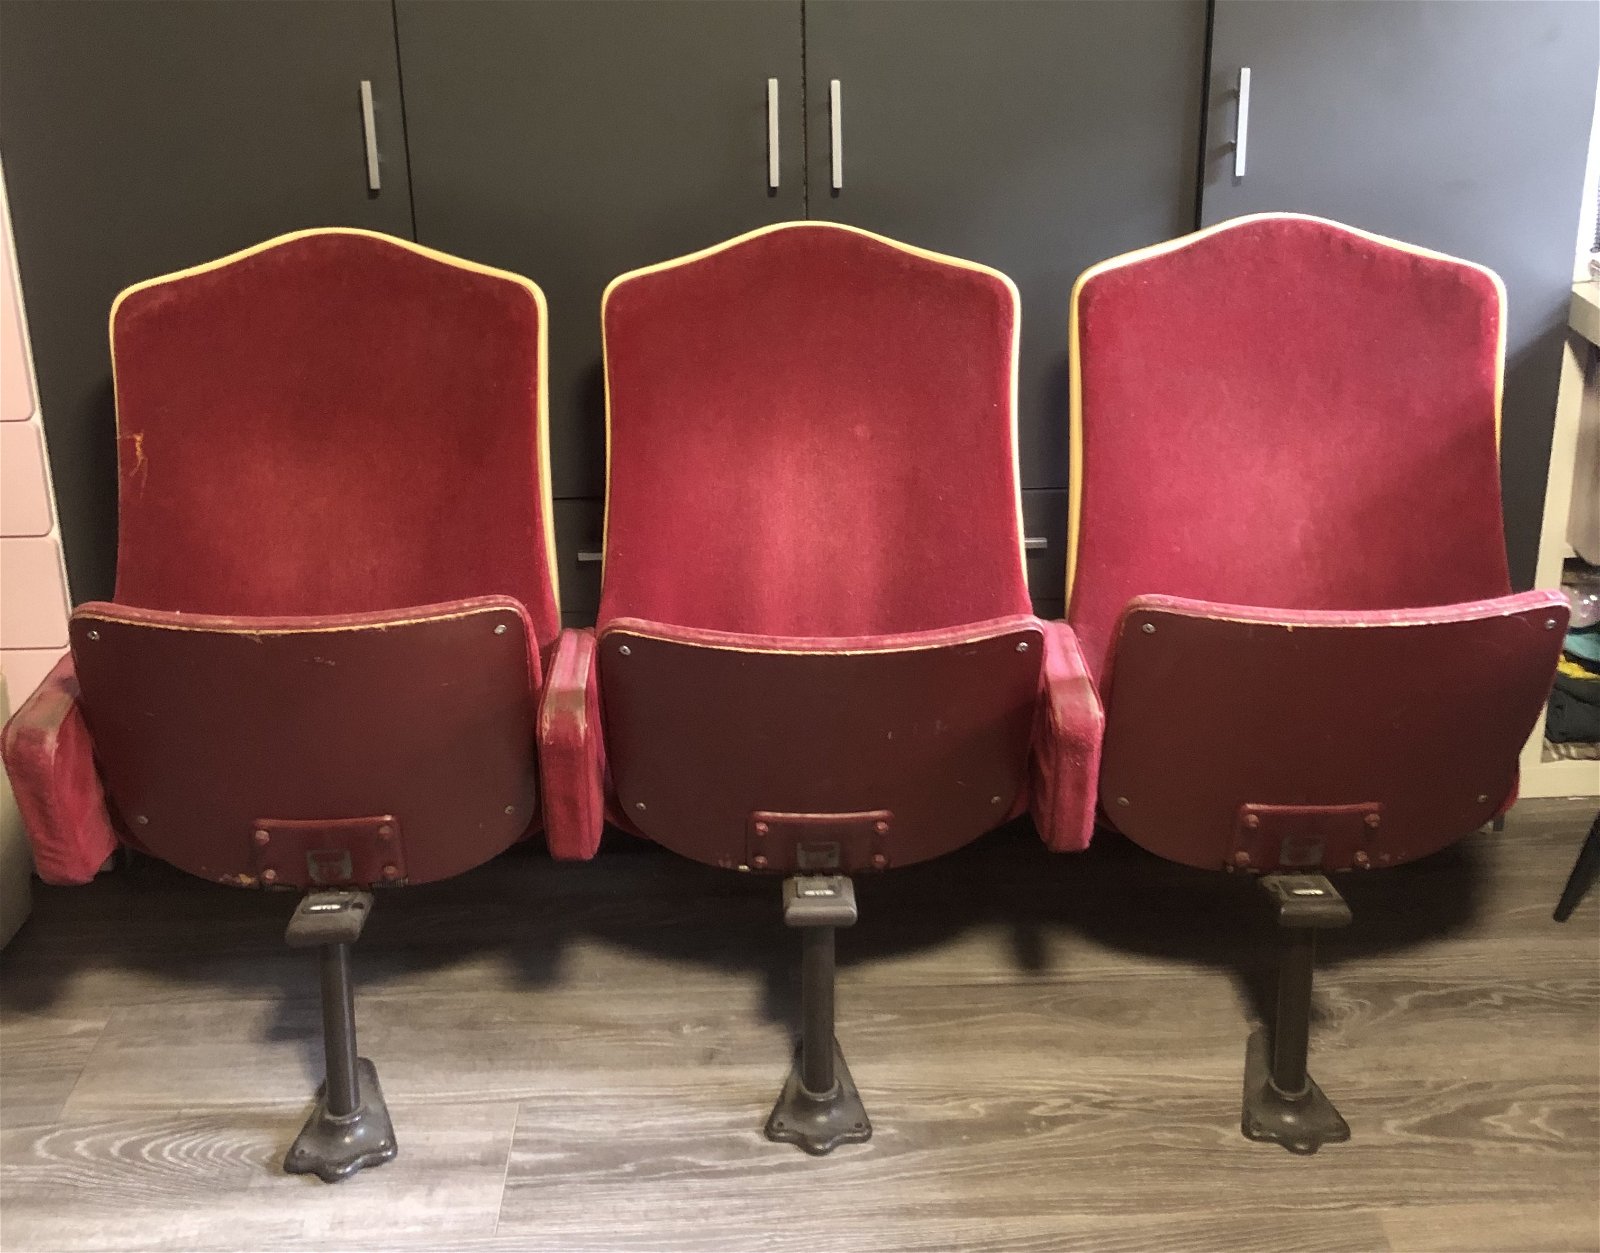 Whoppah Vintage Theater stoelen Metal - Tweedehands